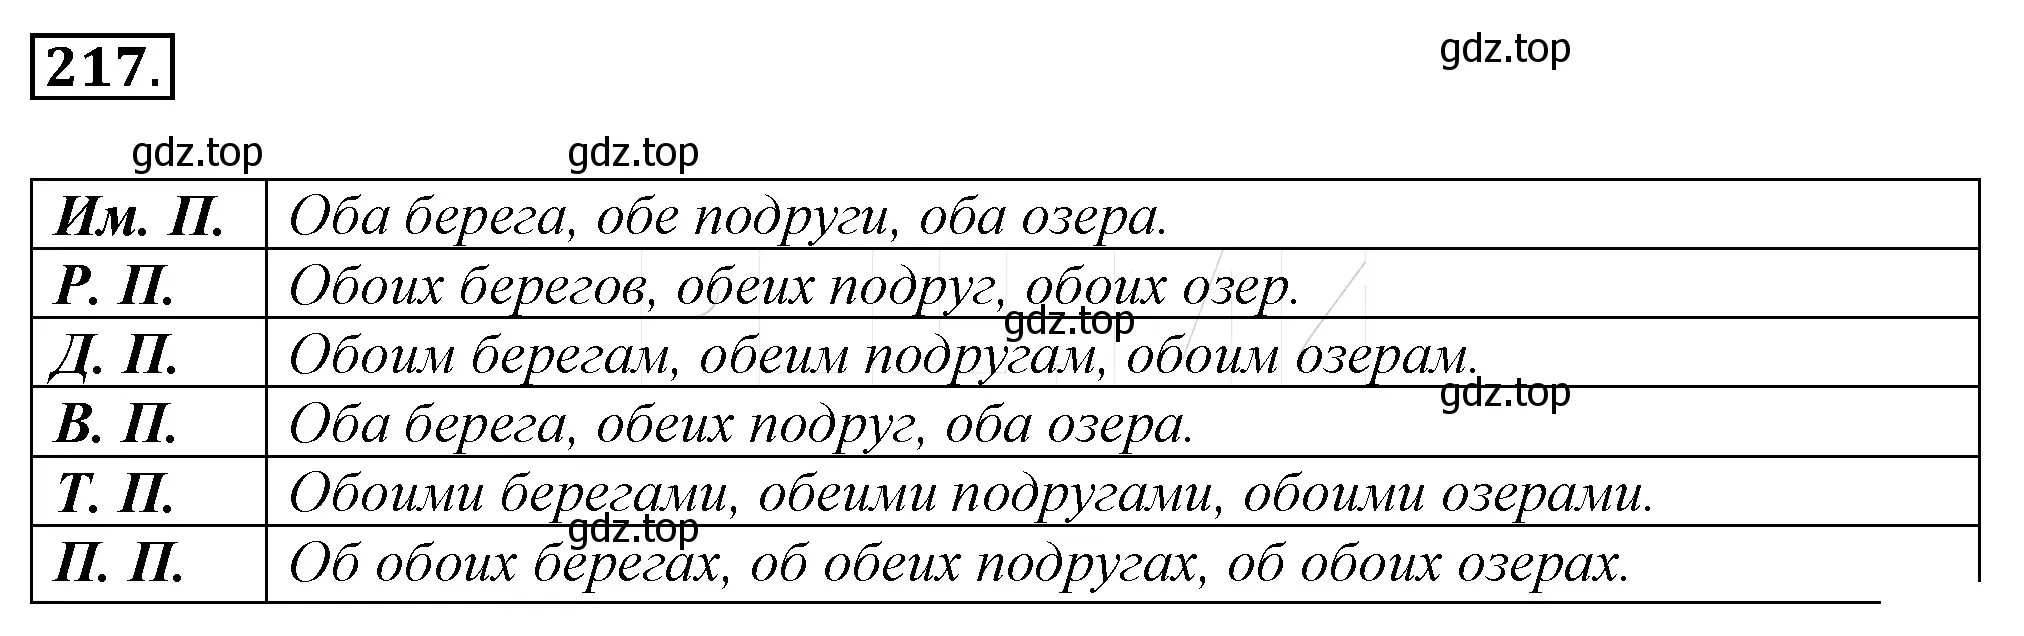 Решение 4. номер 241 (страница 229) гдз по русскому языку 10-11 класс Гольцова, Шамшин, учебник 1 часть